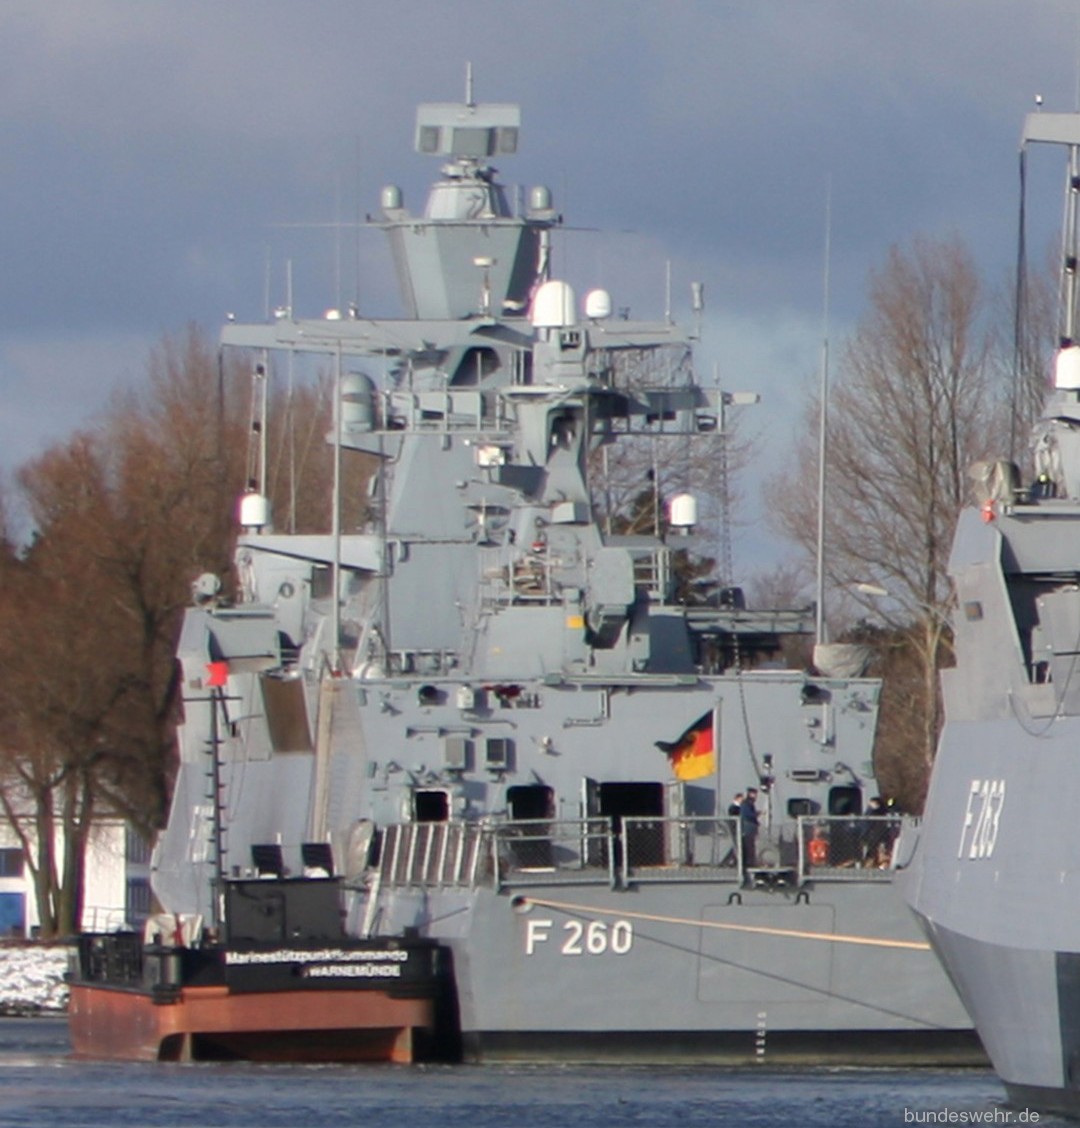 f-260 fgs braunschweig type k130 class corvette german navy 13